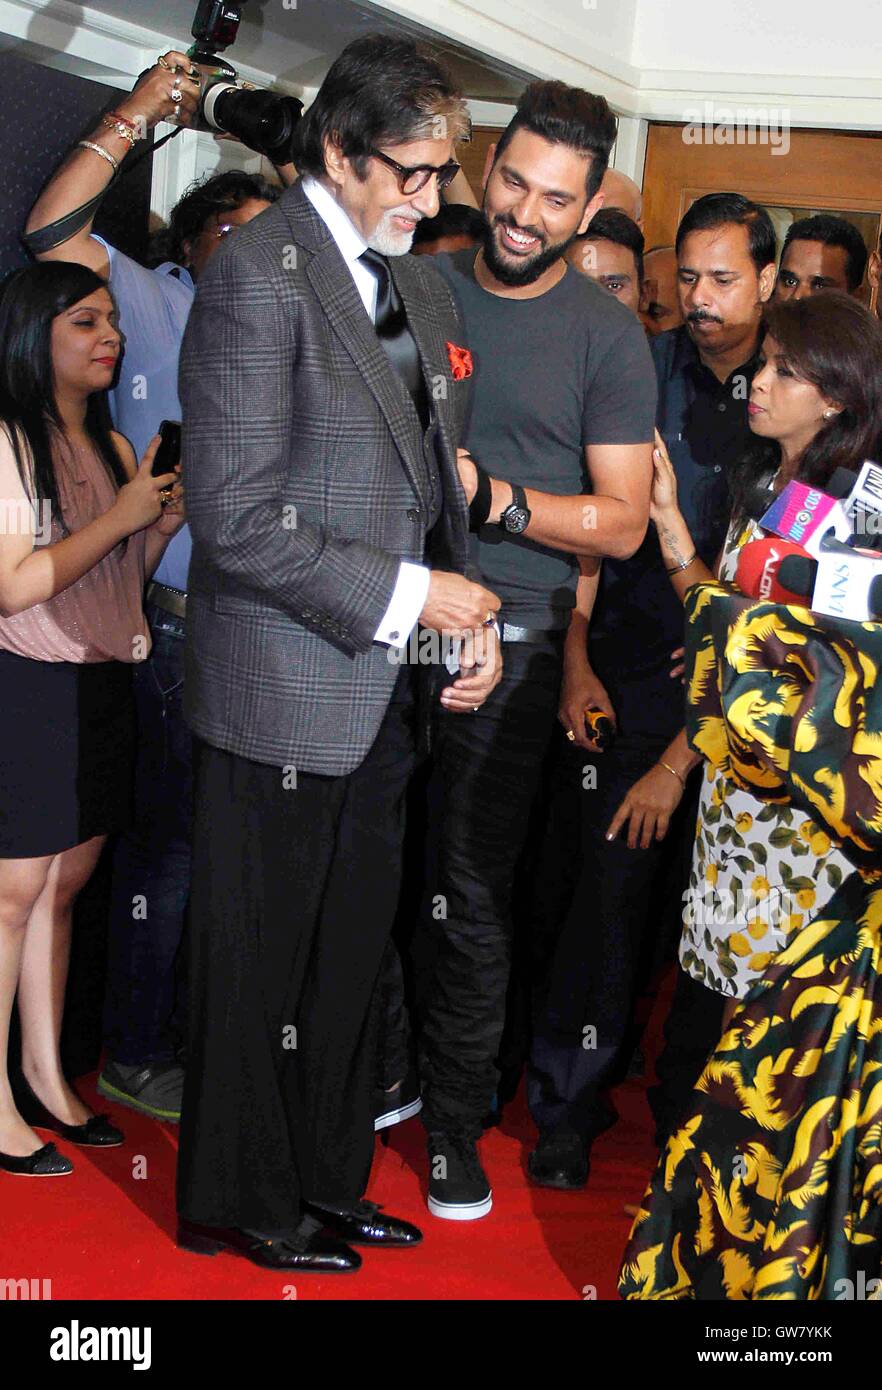 Indiano giocatore di cricket Yuvraj Singh attore di Bollywood Amitabh Bachchan lancio del marchio di abbigliamento YWC progettato Shantanu Nikhil Mumbai Foto Stock